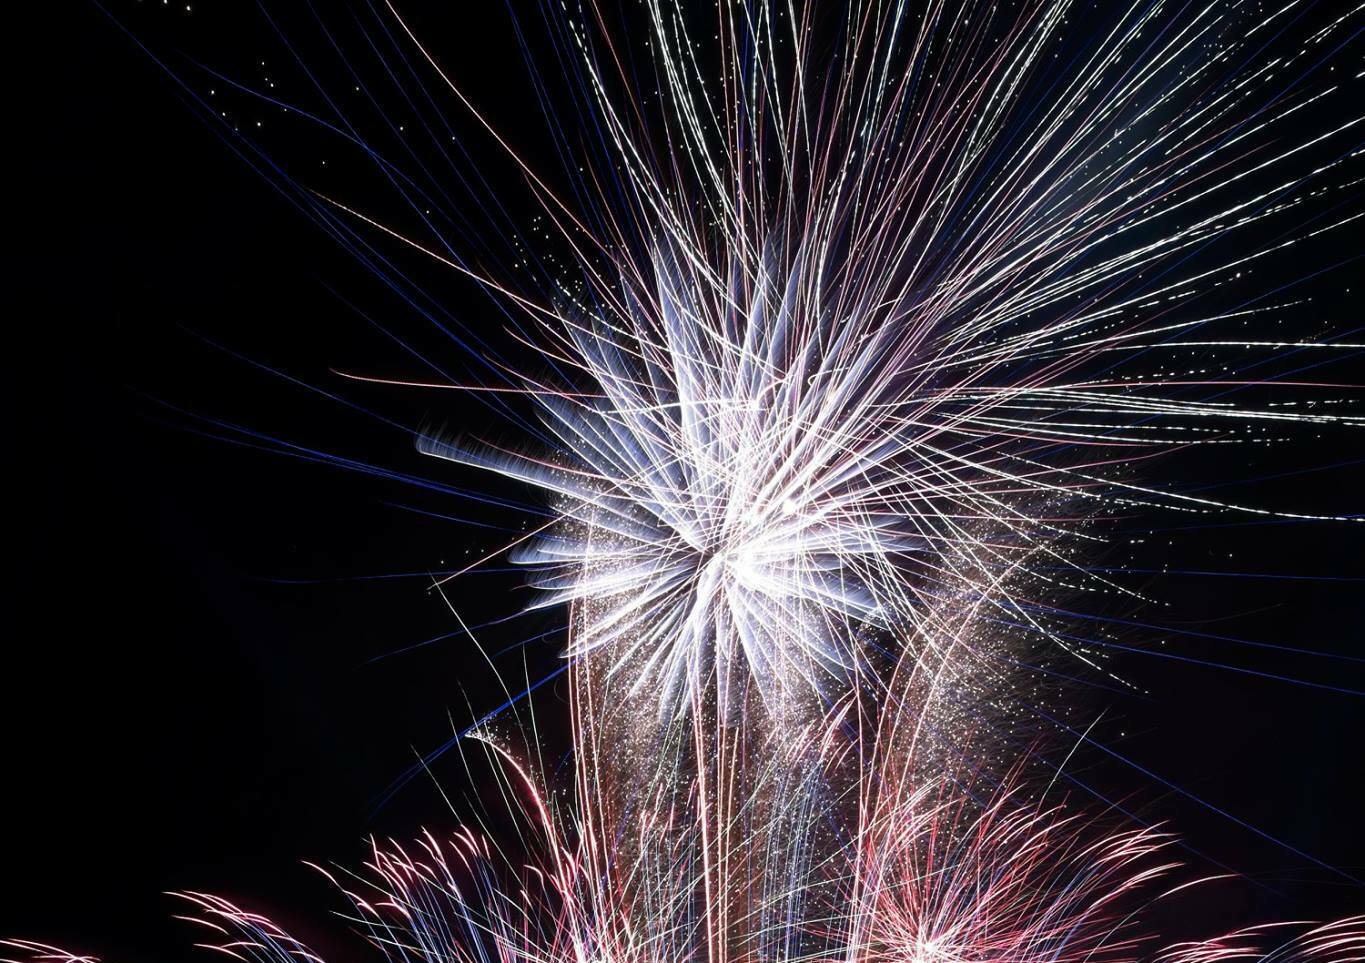 Starburst Fireworks (James Bevis)